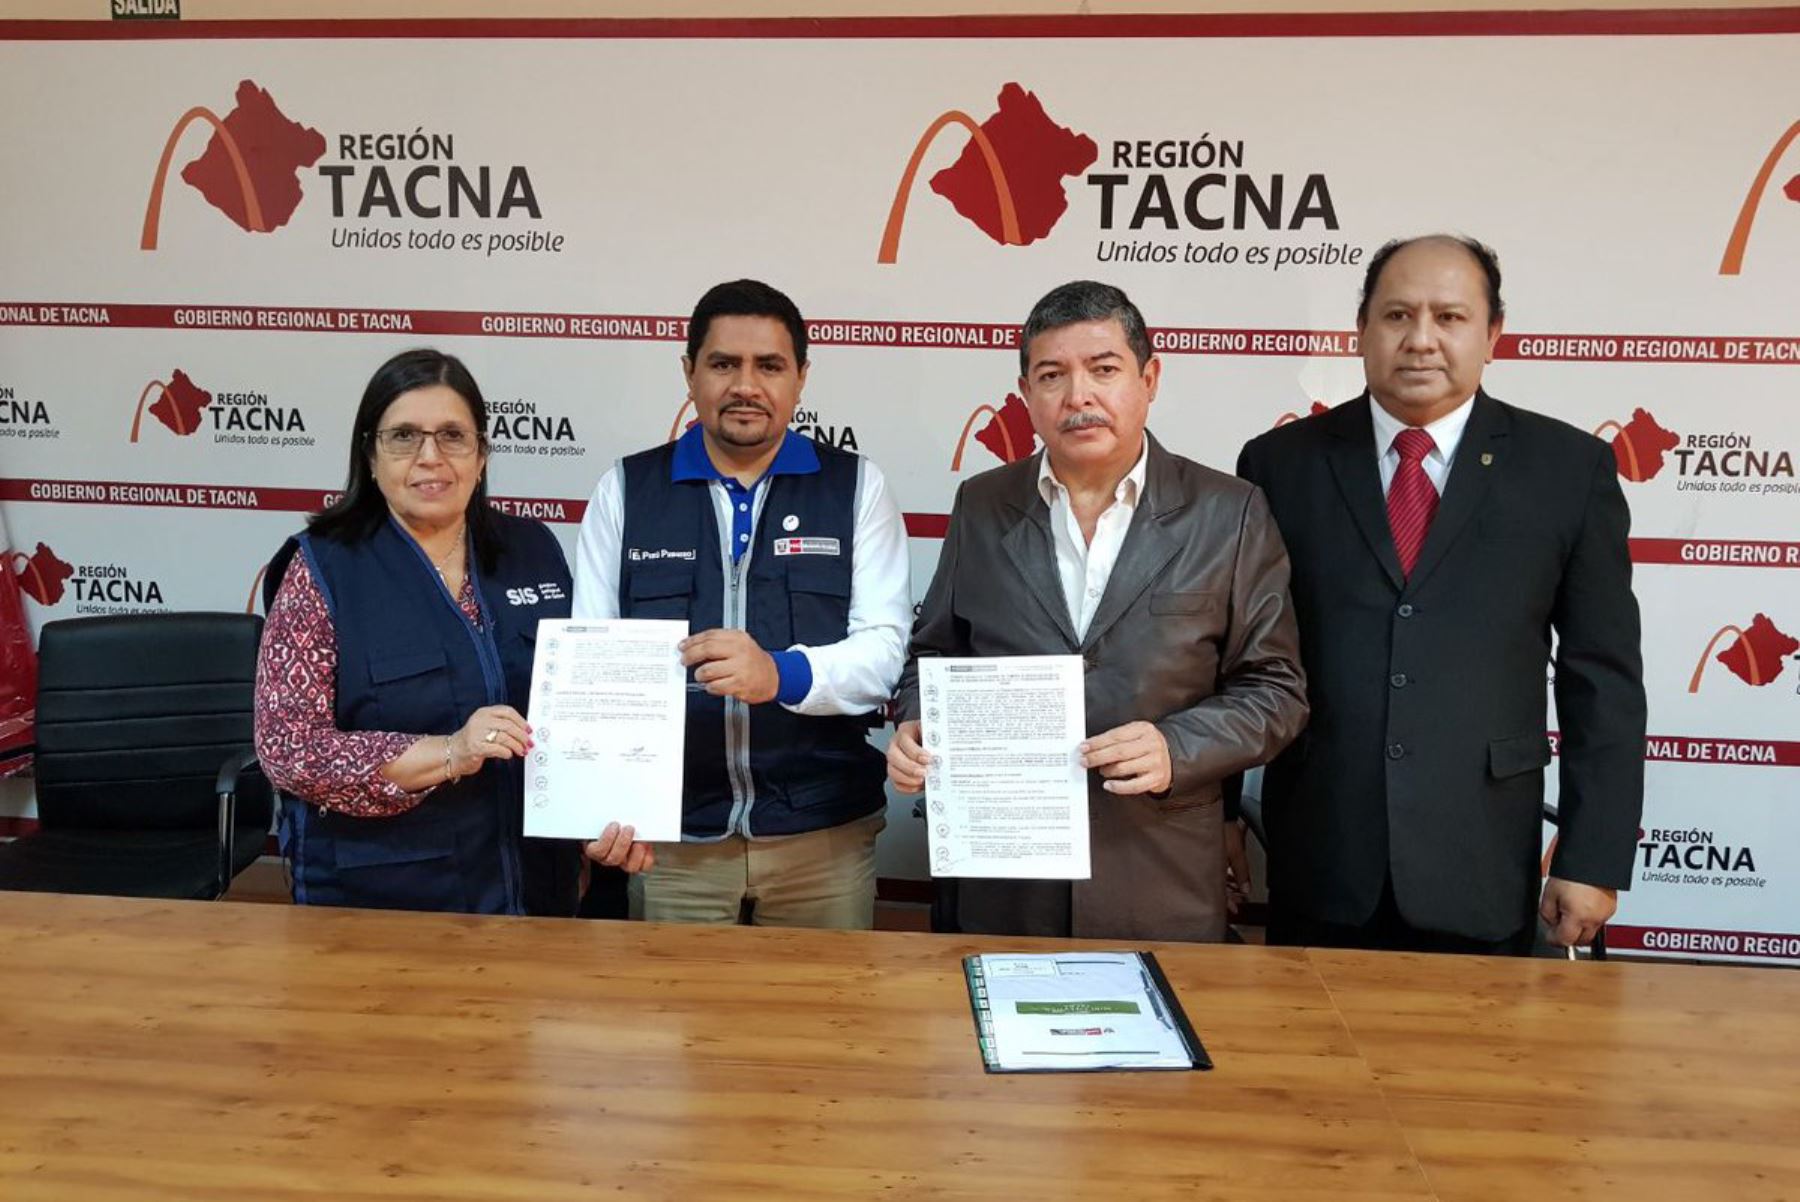 La lucha contra la anemia y la ejecución de diversos proyectos de inversión pública constituyen un signo claro del mejoramiento de los servicios de salud que beneficiarán a la región Tacna, con énfasis en la población infantil, que busca el sector Salud conjuntamente con el gobierno regional y las autoridades locales.